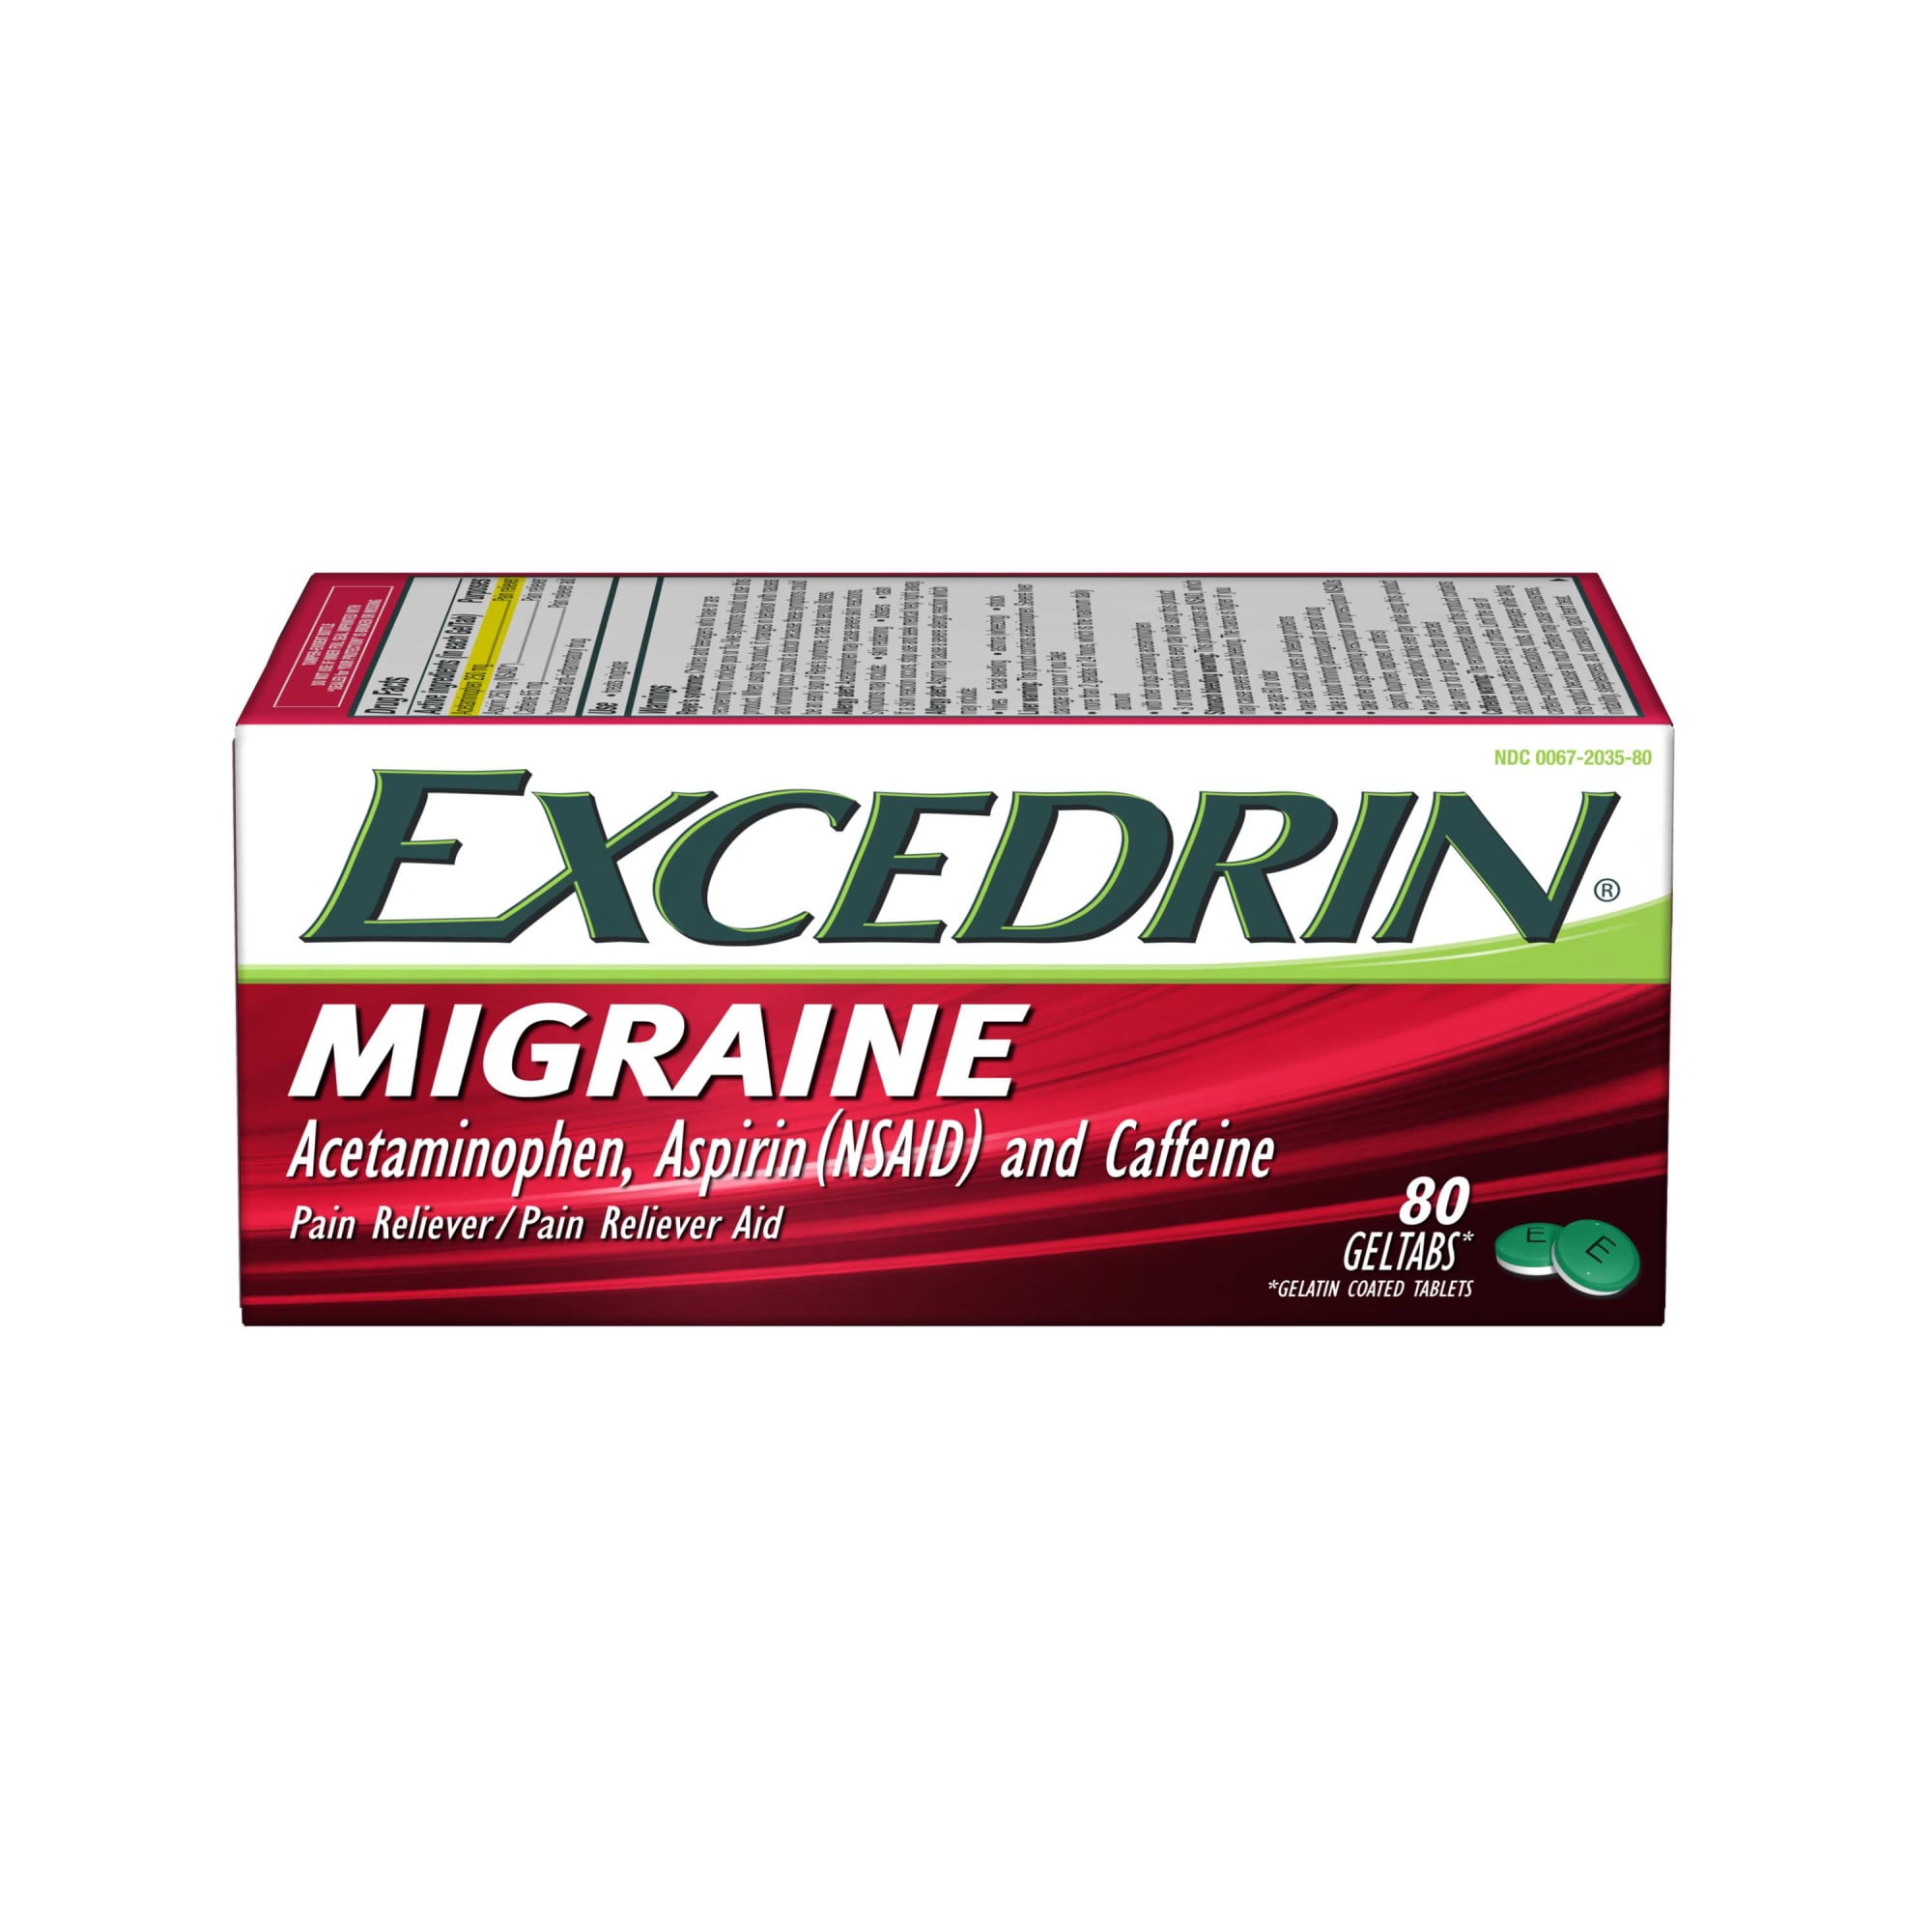 Chronic Migraine